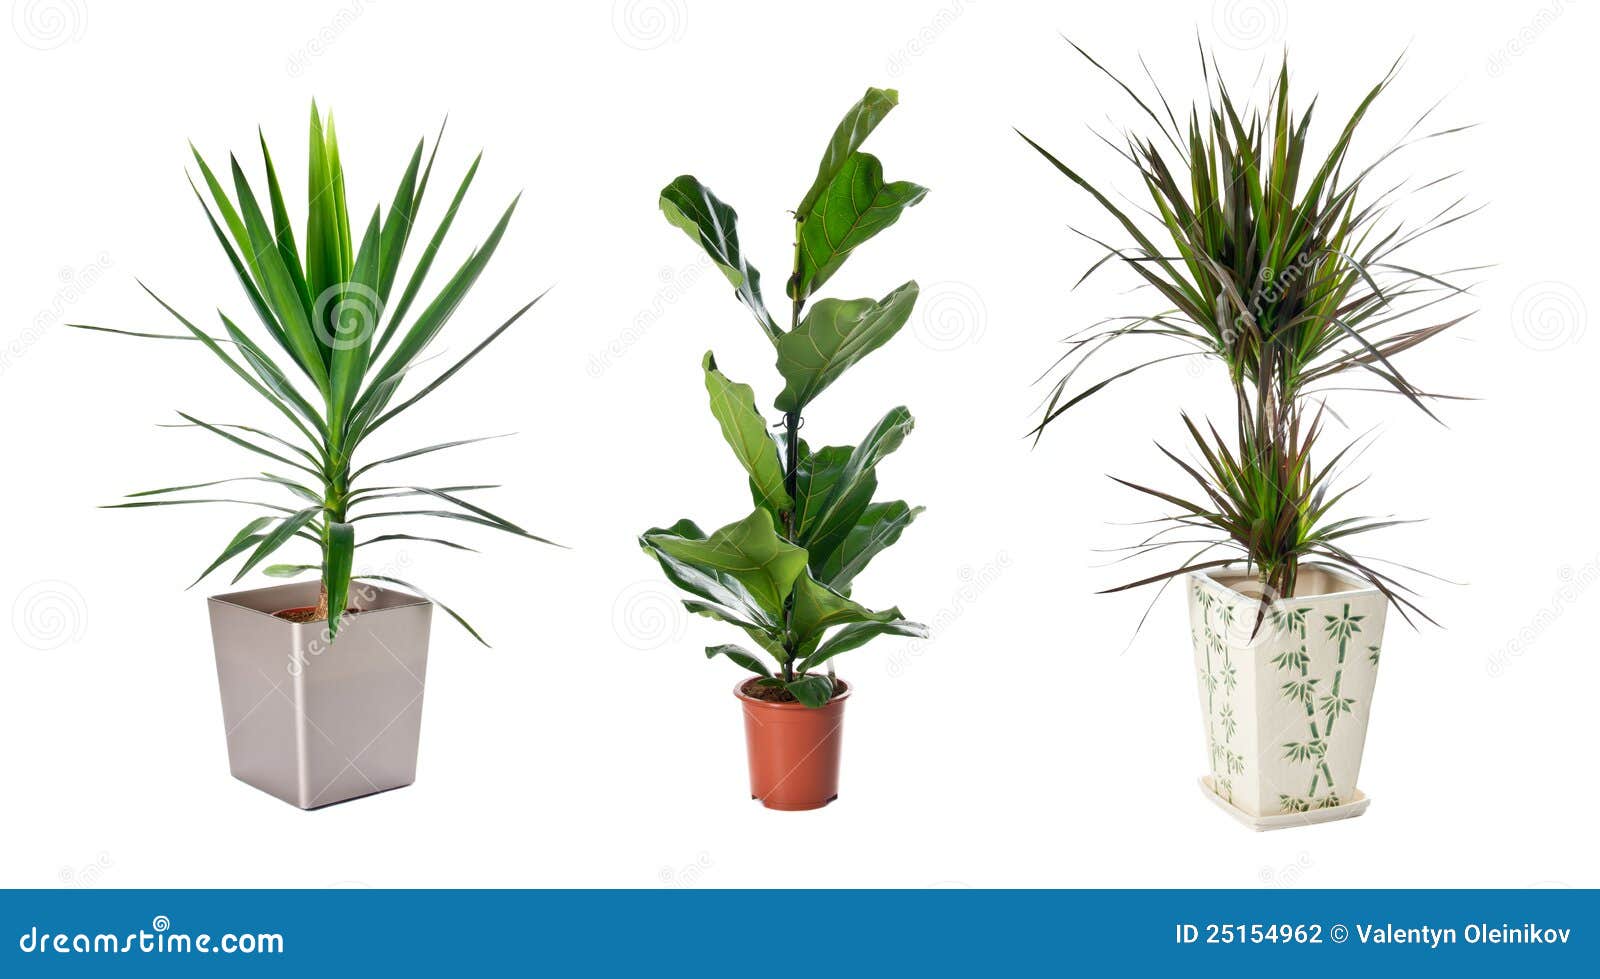 set of indoor plants